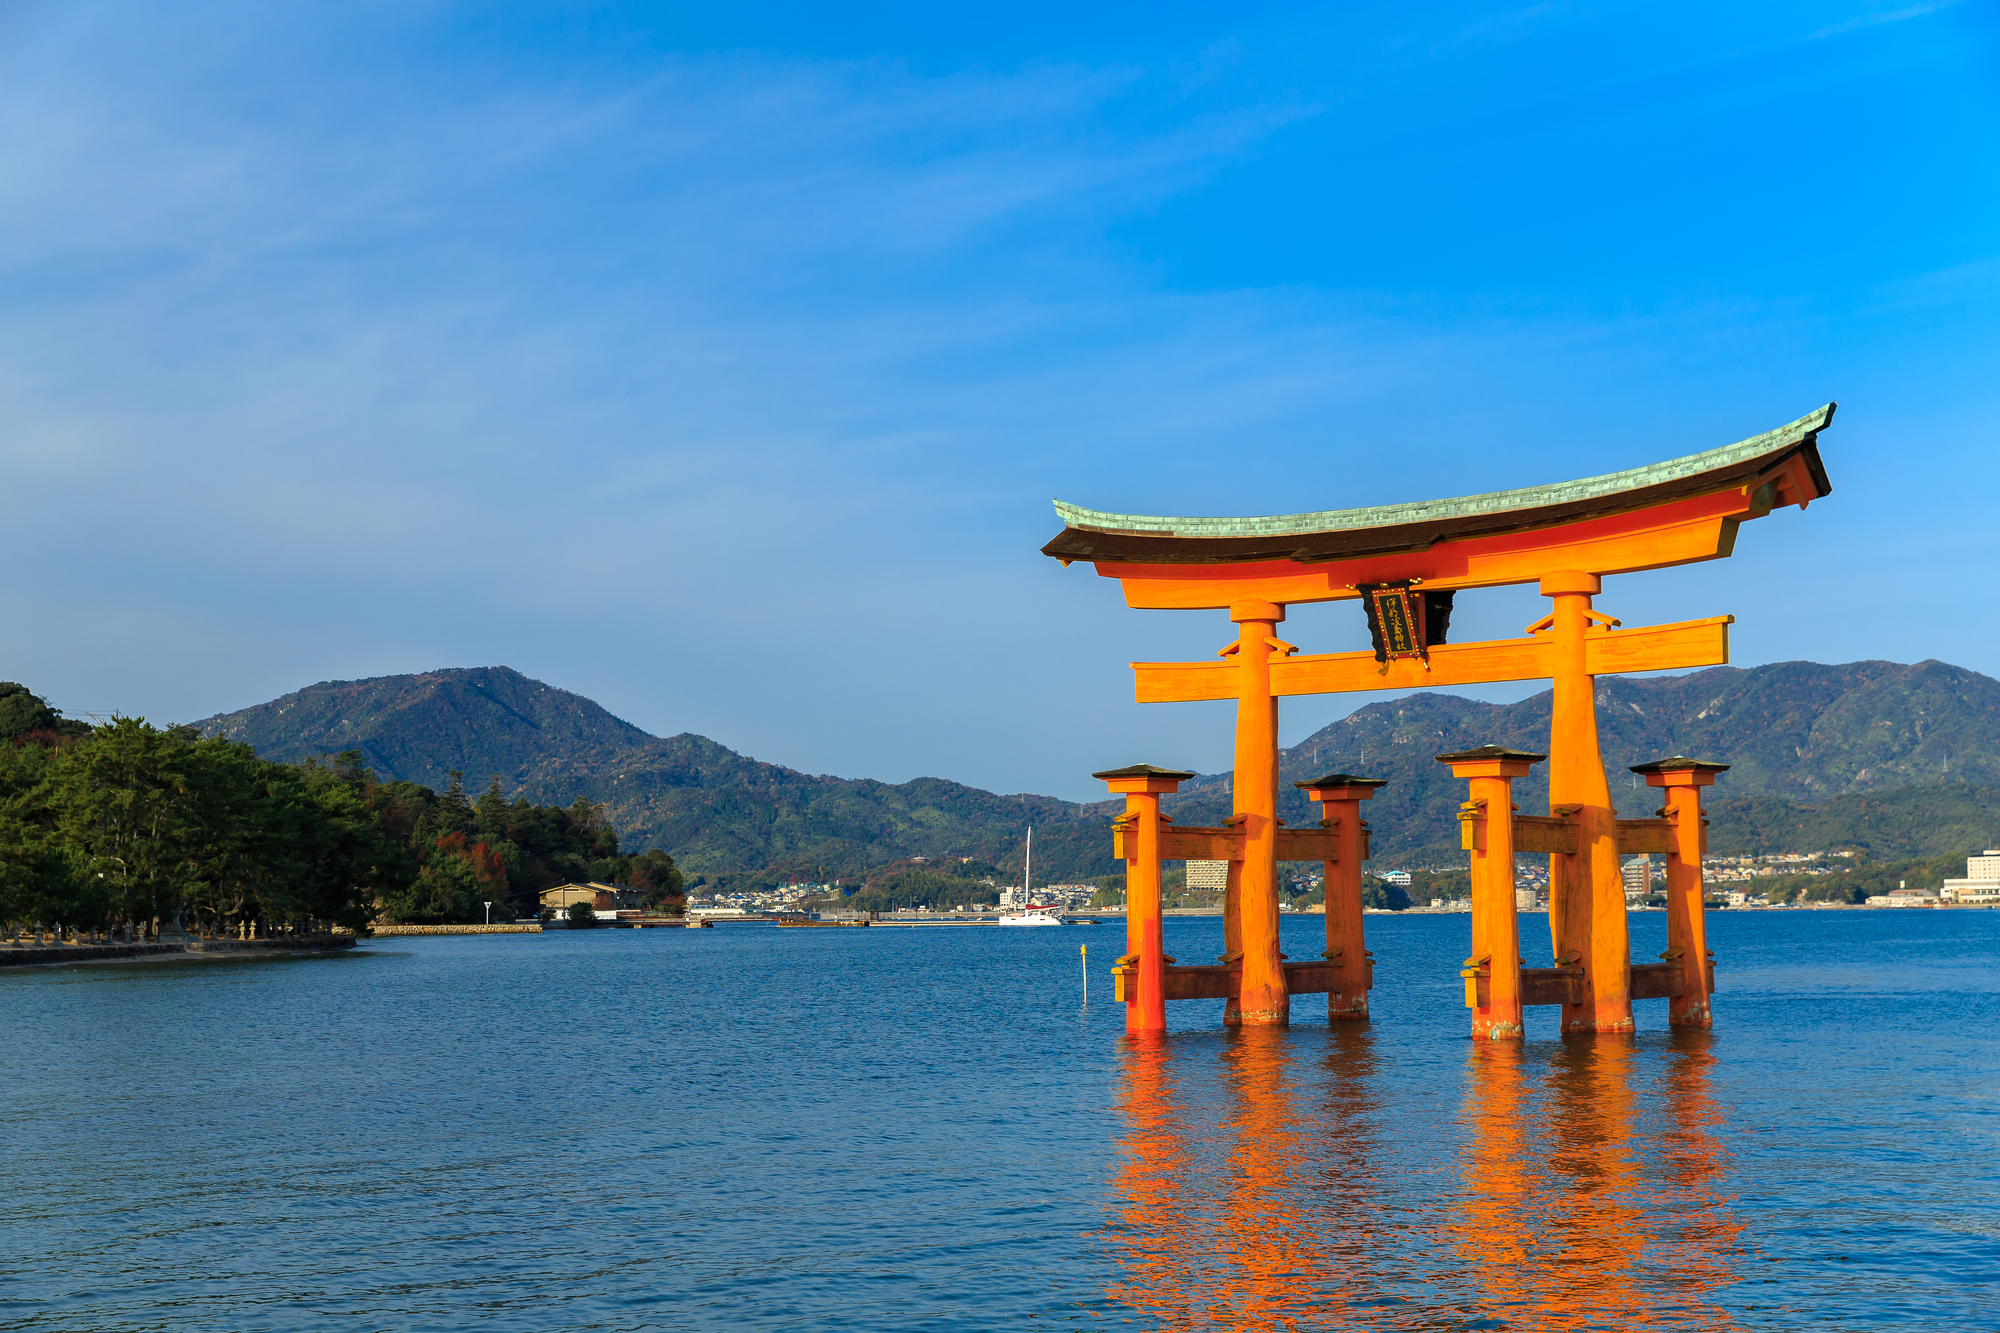 広島で一人旅をするなら おすすめ観光スポット6選 必食グルメ 後払いホテル予約サイト Minute